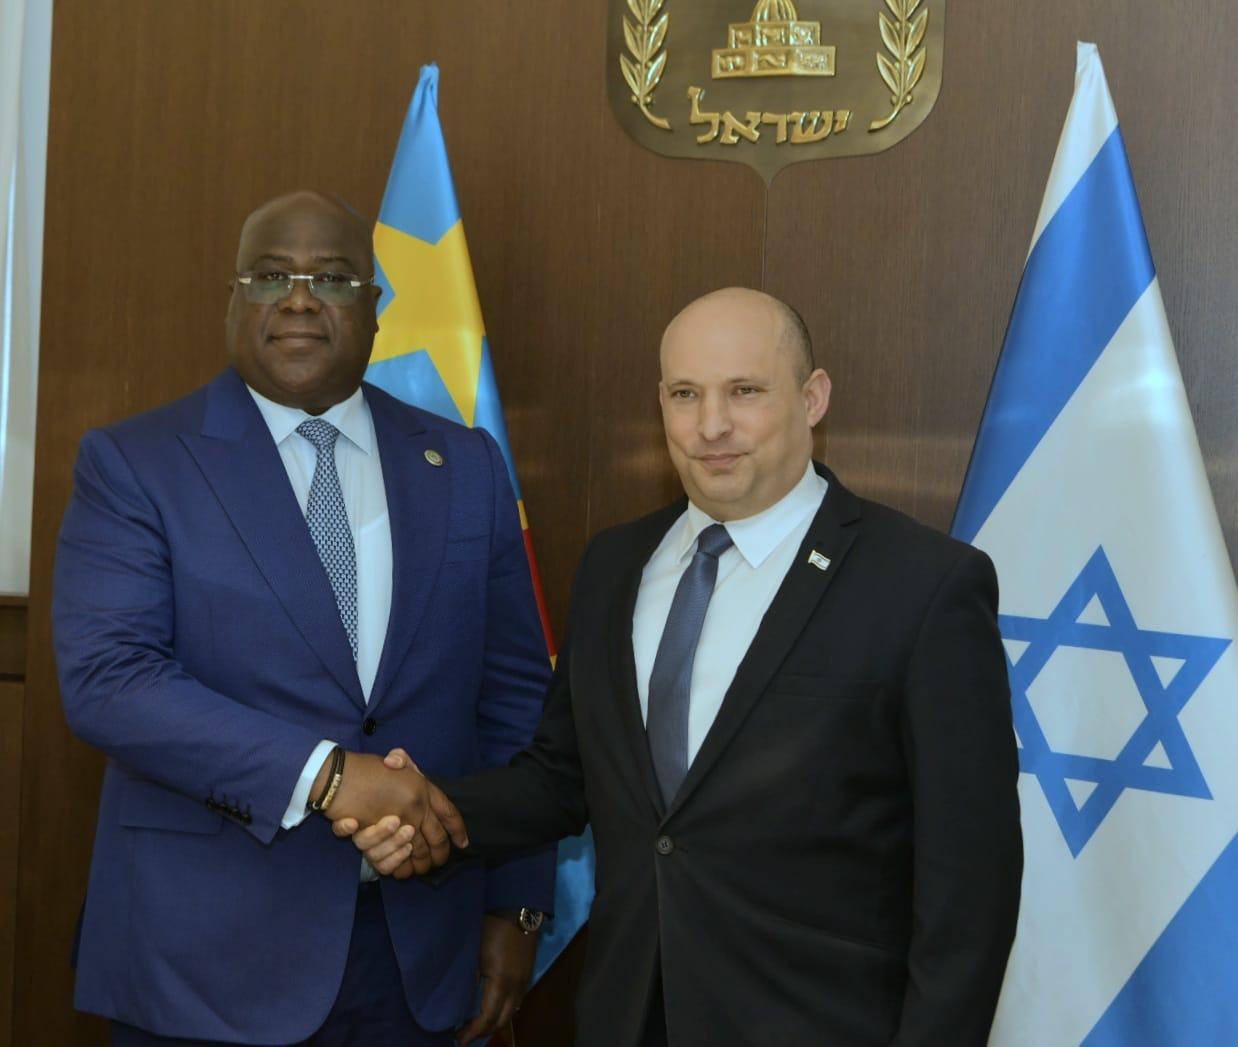 RDC: coopération sécuritaire et politique au centre des échanges entre Félix Tshisekedi et le premier ministre israélien